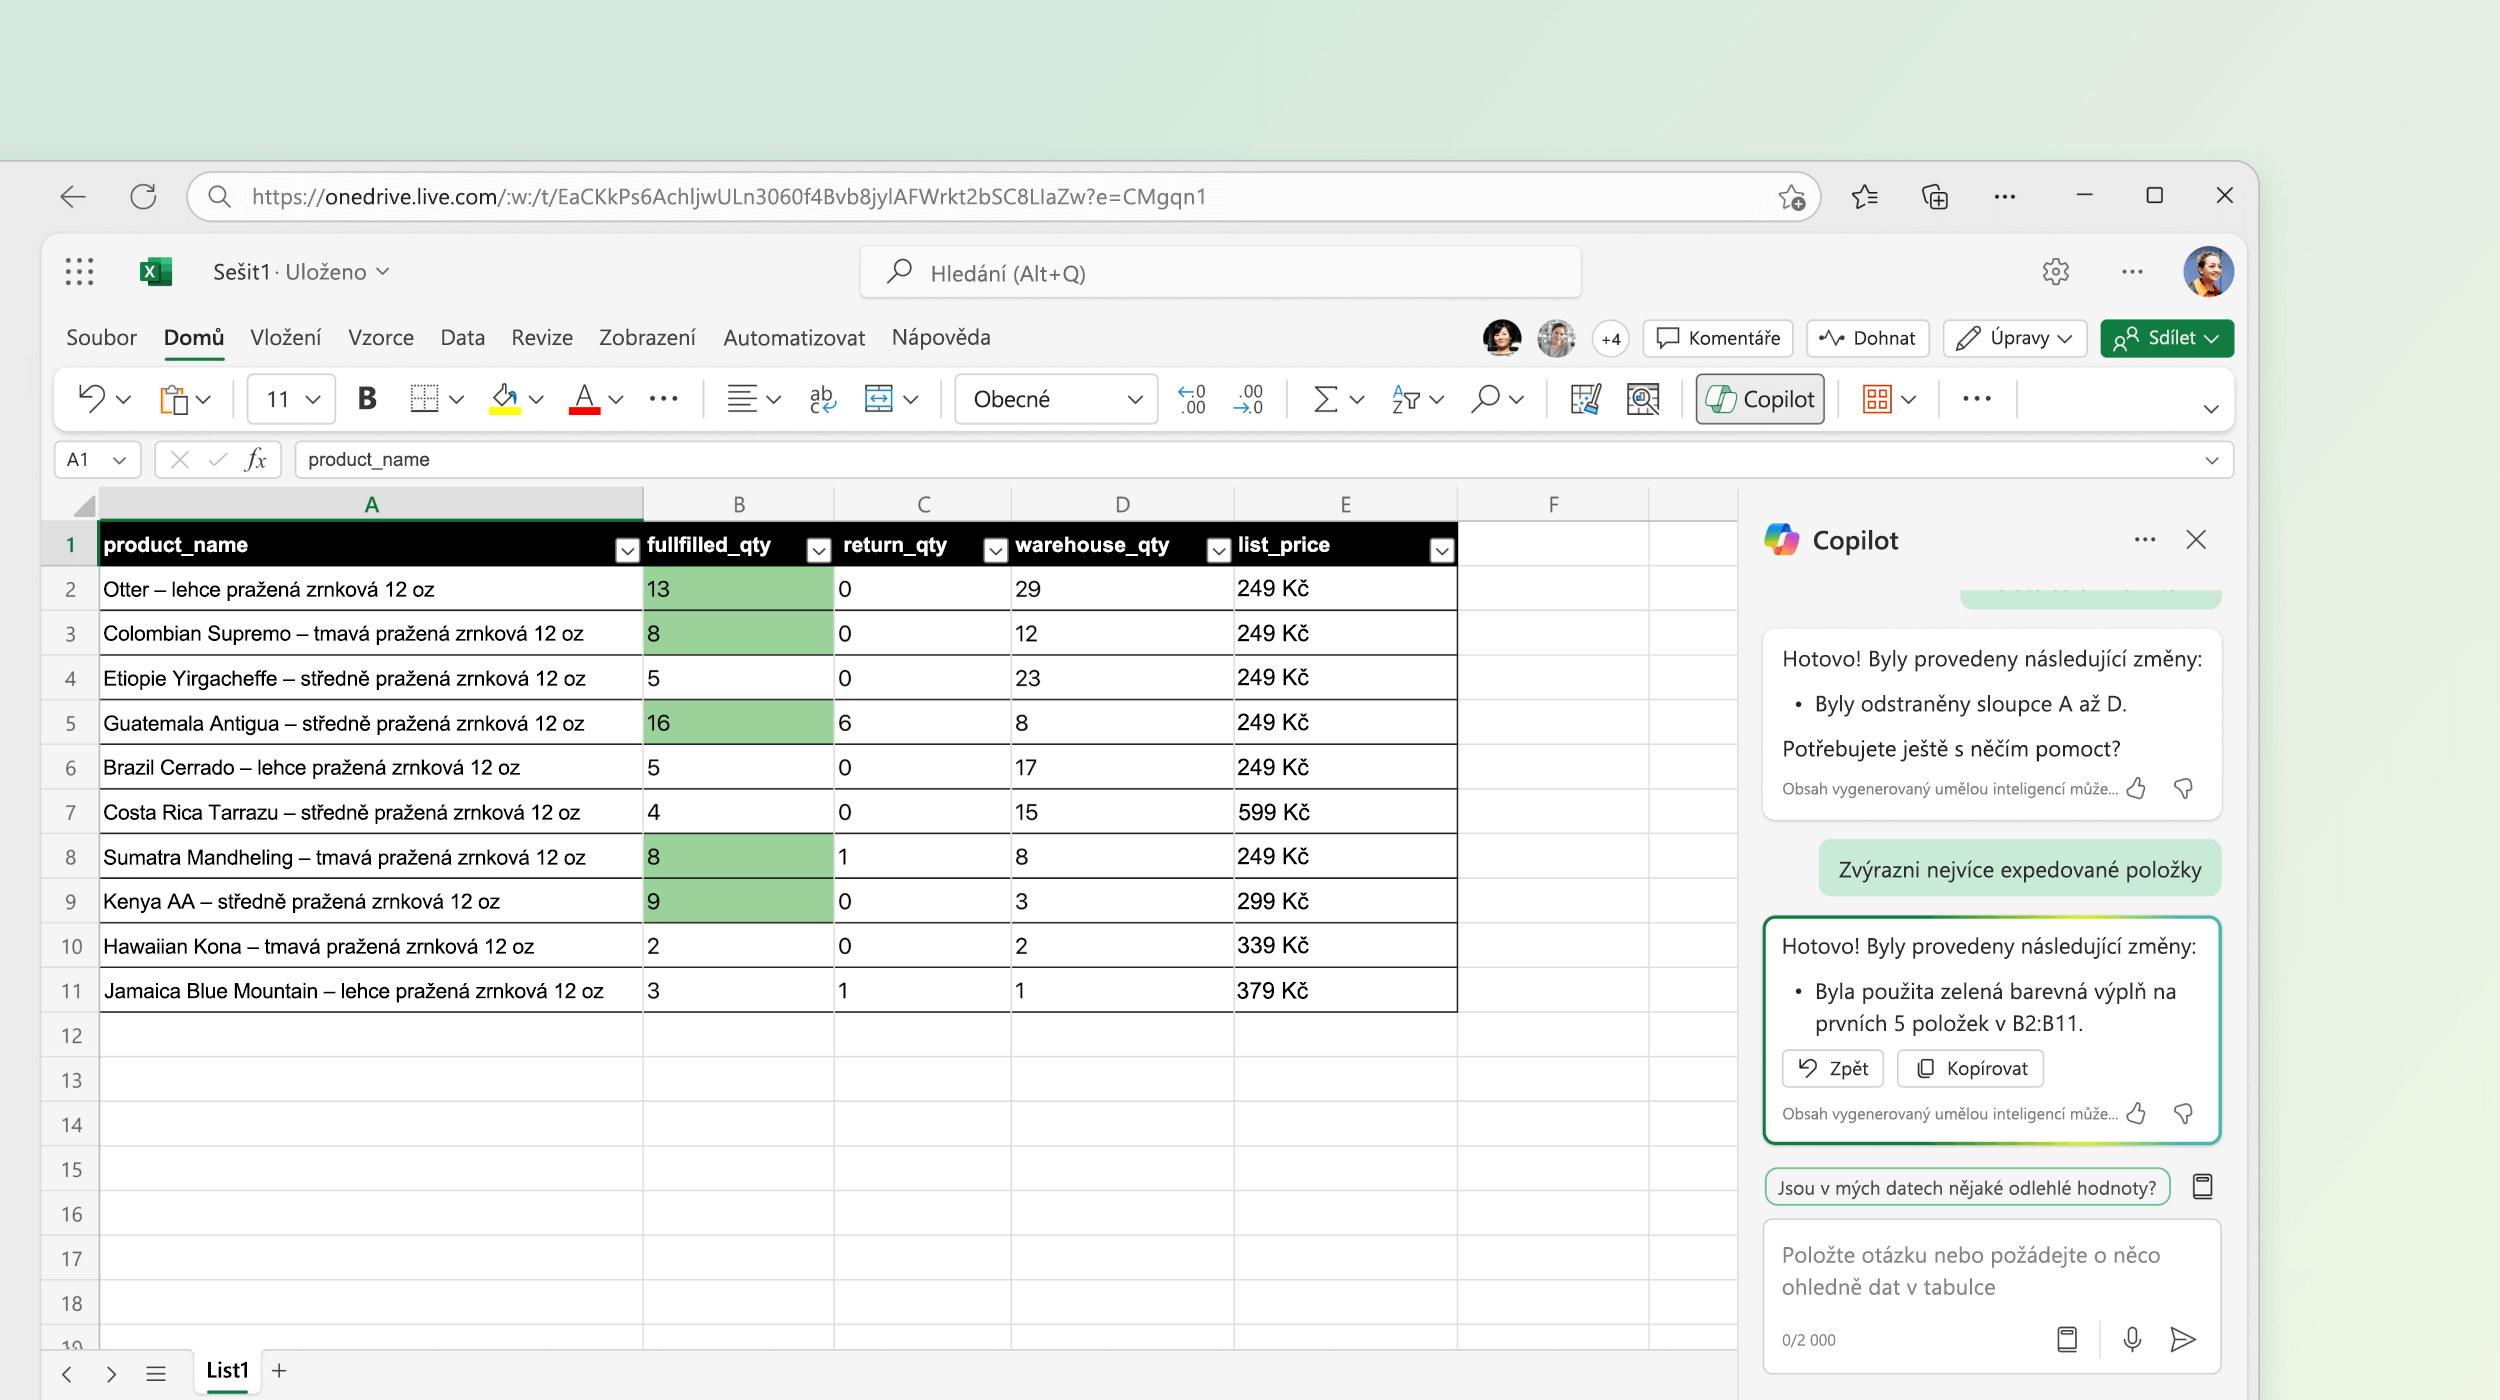 Snímek obrazovky znázorňující Copilota v Excelu, který provádí změny v existujících datech.